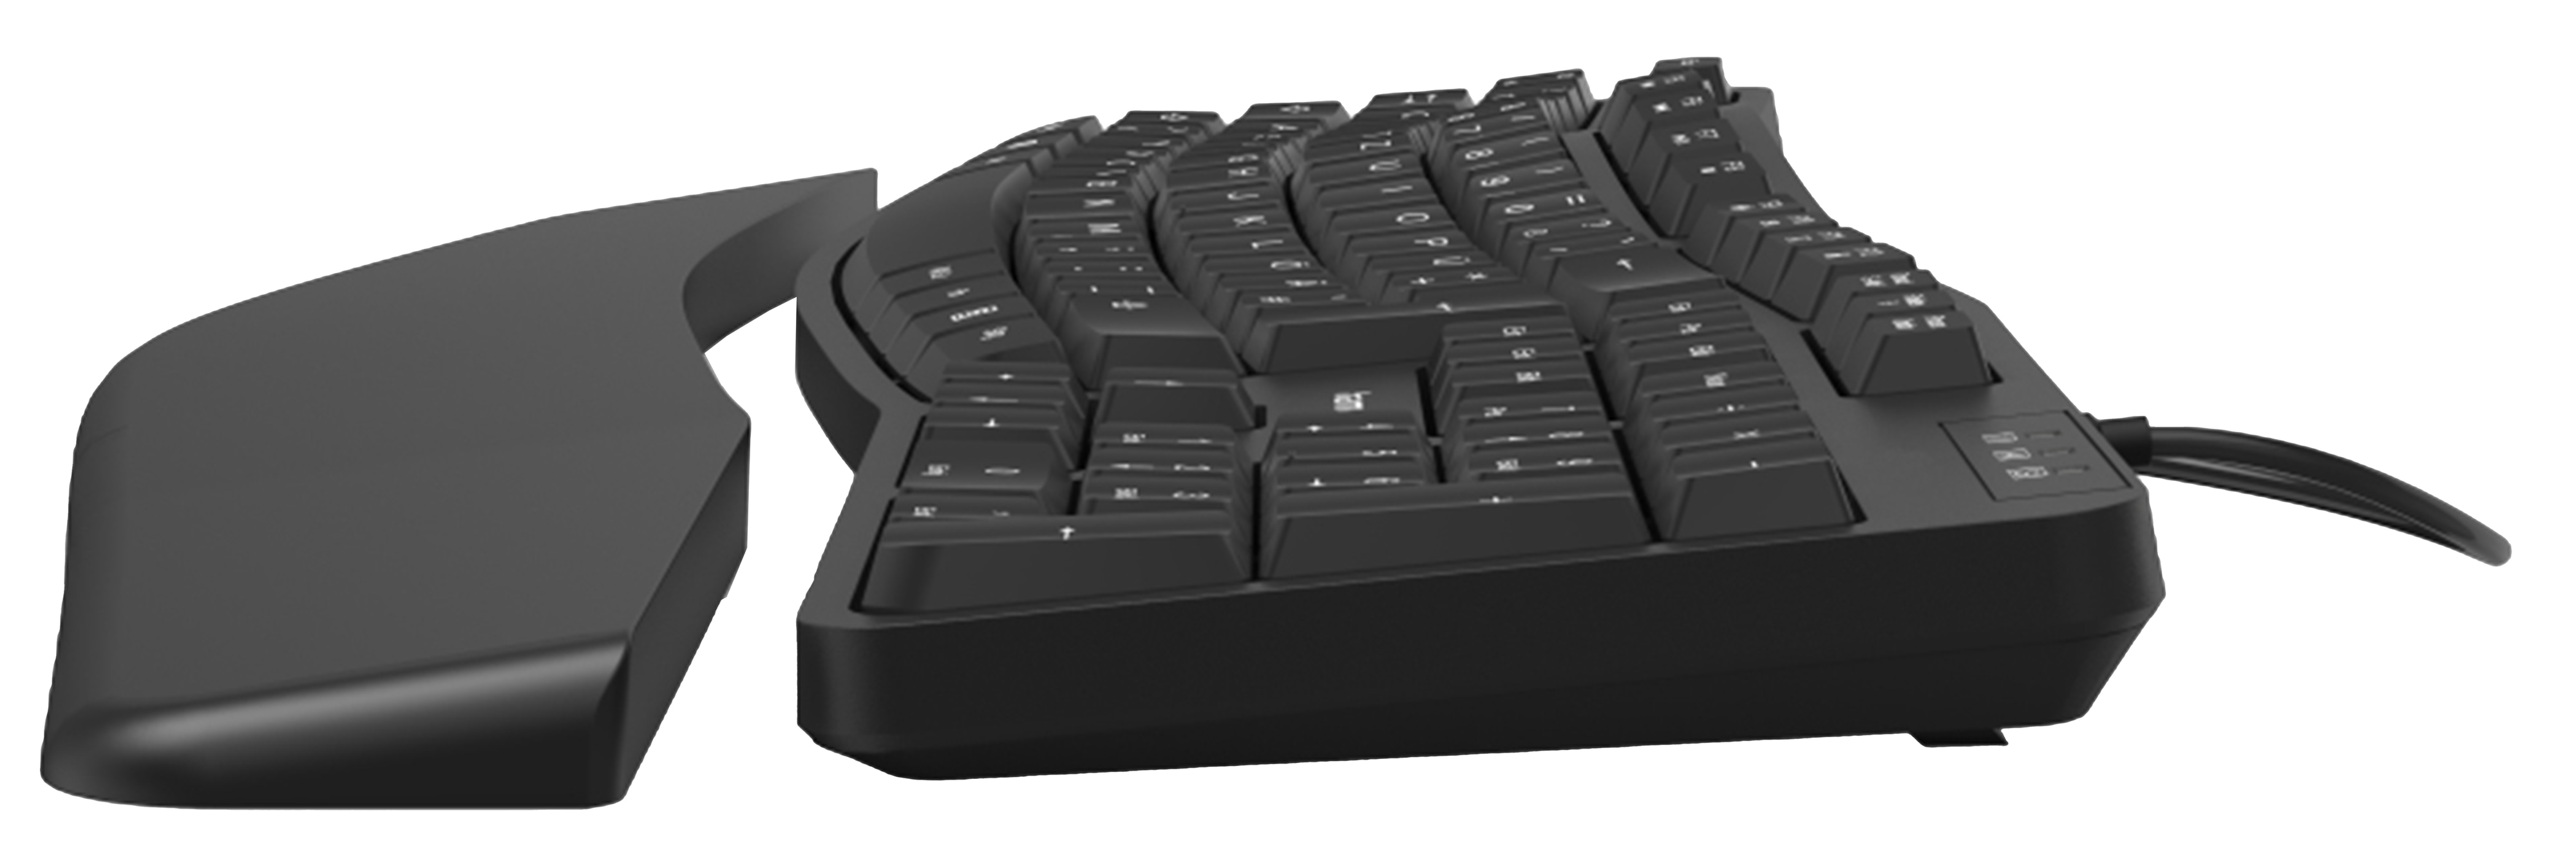 HAMA Tastatur EKC-400